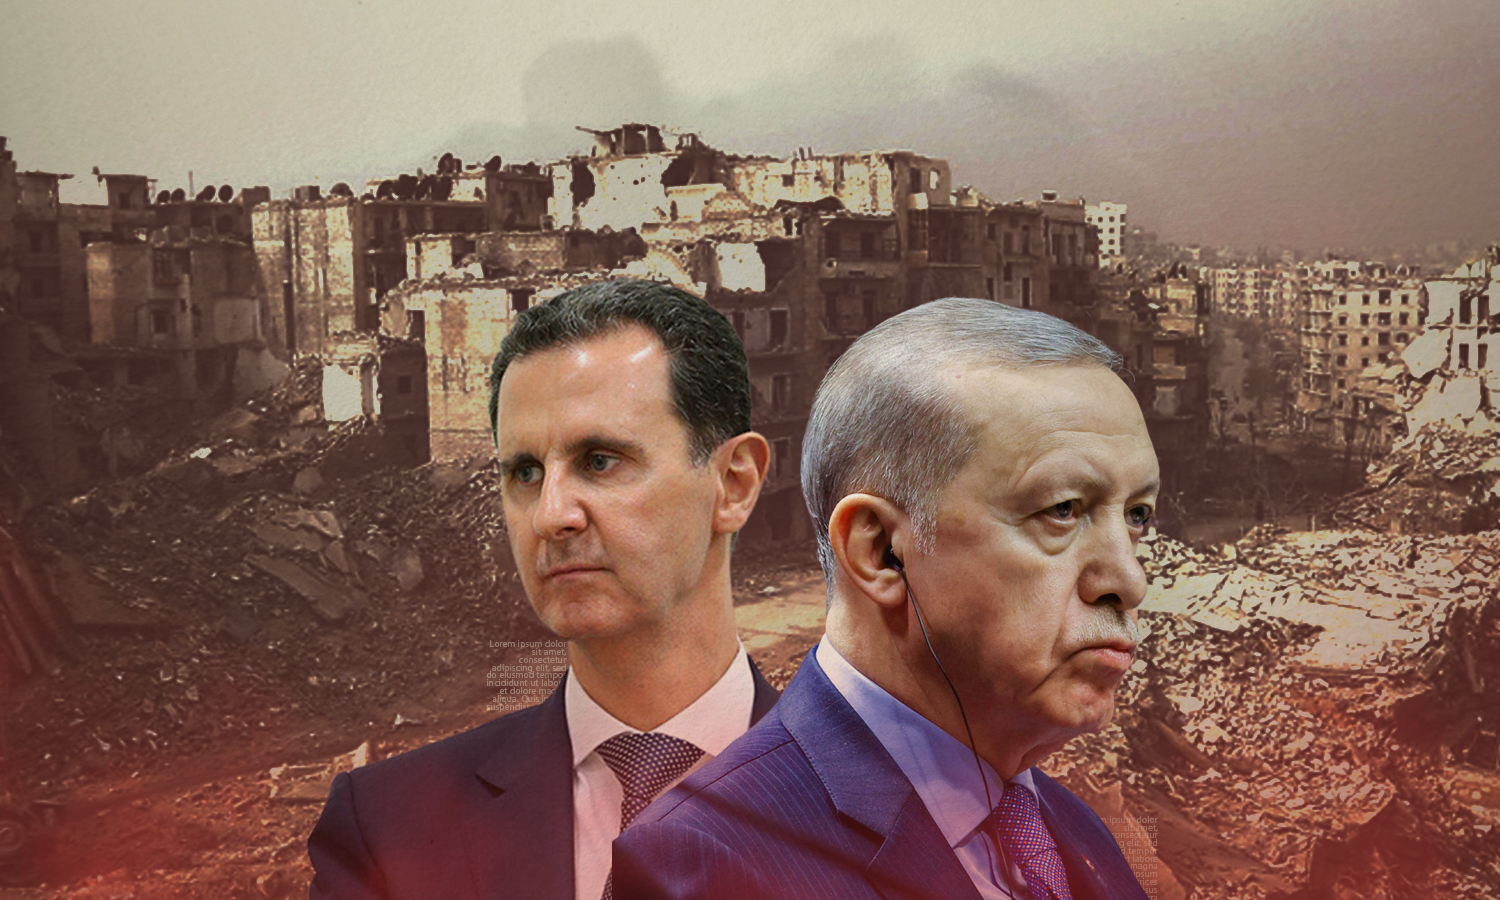 رئيس النظام السوري بشار الأسد والرئيس التركي رجب طيب أردوغان (تعديل عنب بلدي)